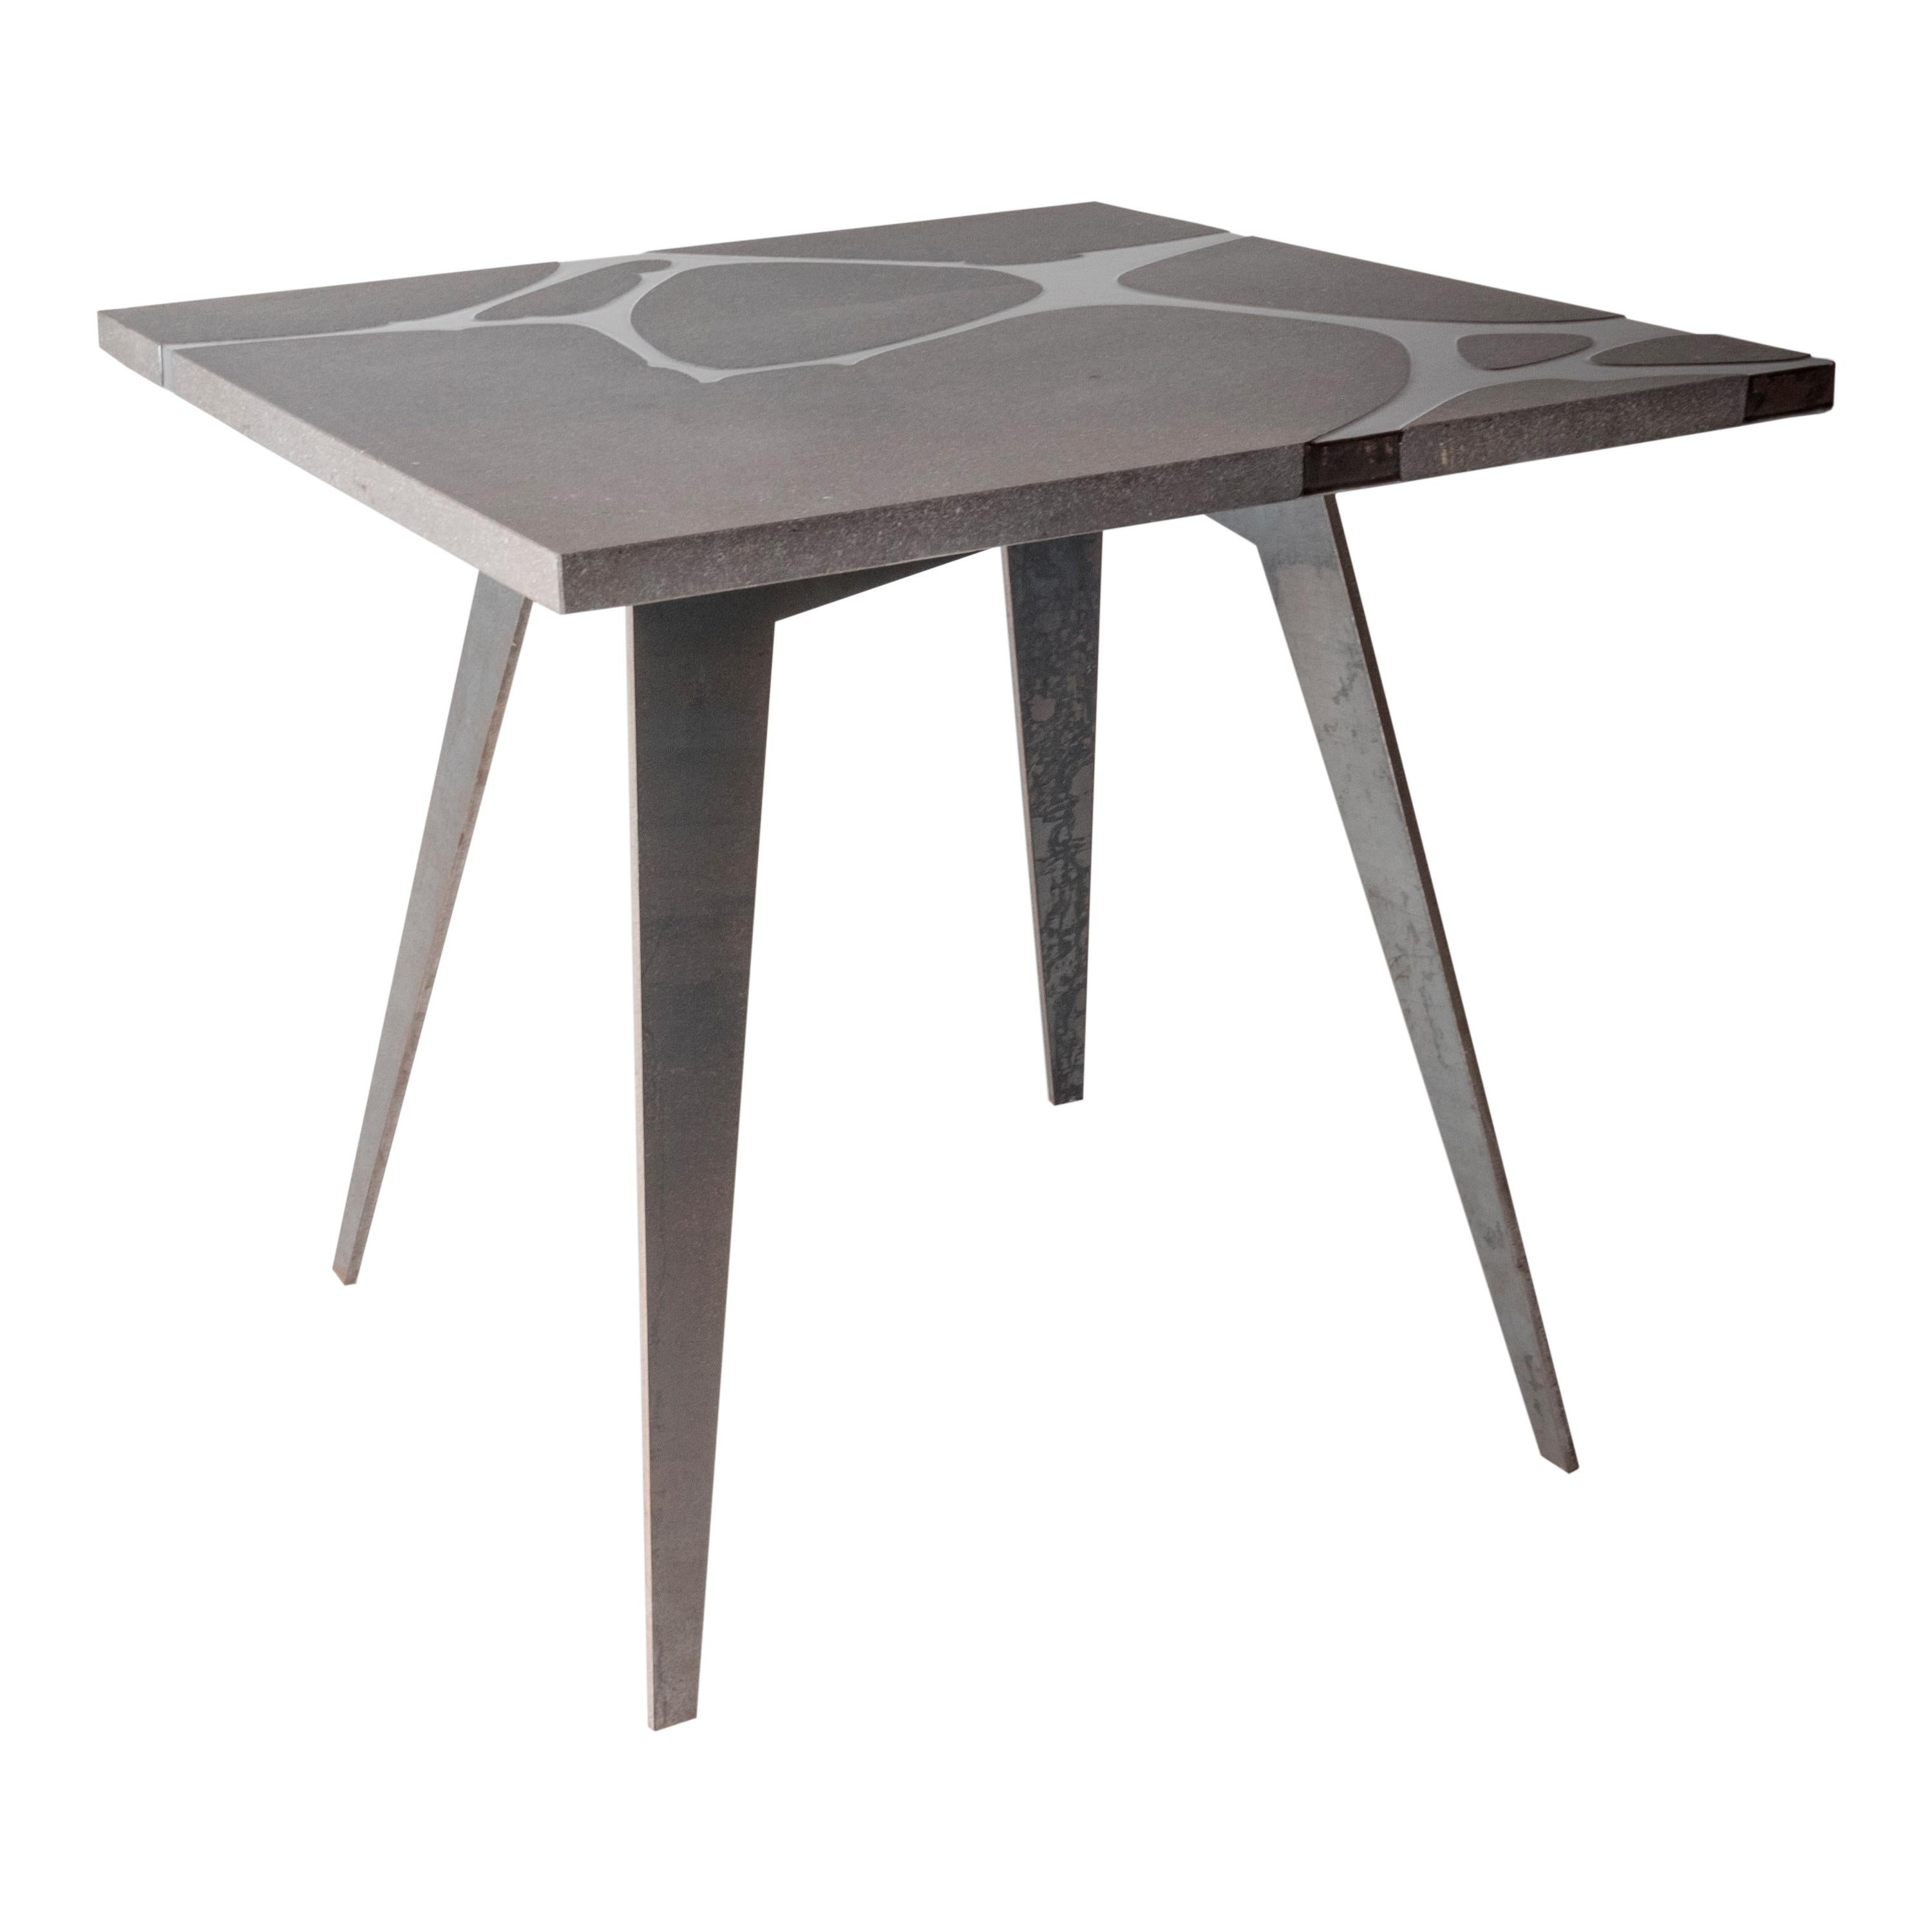 Italian Modern Outdoor Square Table in Lava Stone and Steel, Venturae v1, Filodifumo For Sale